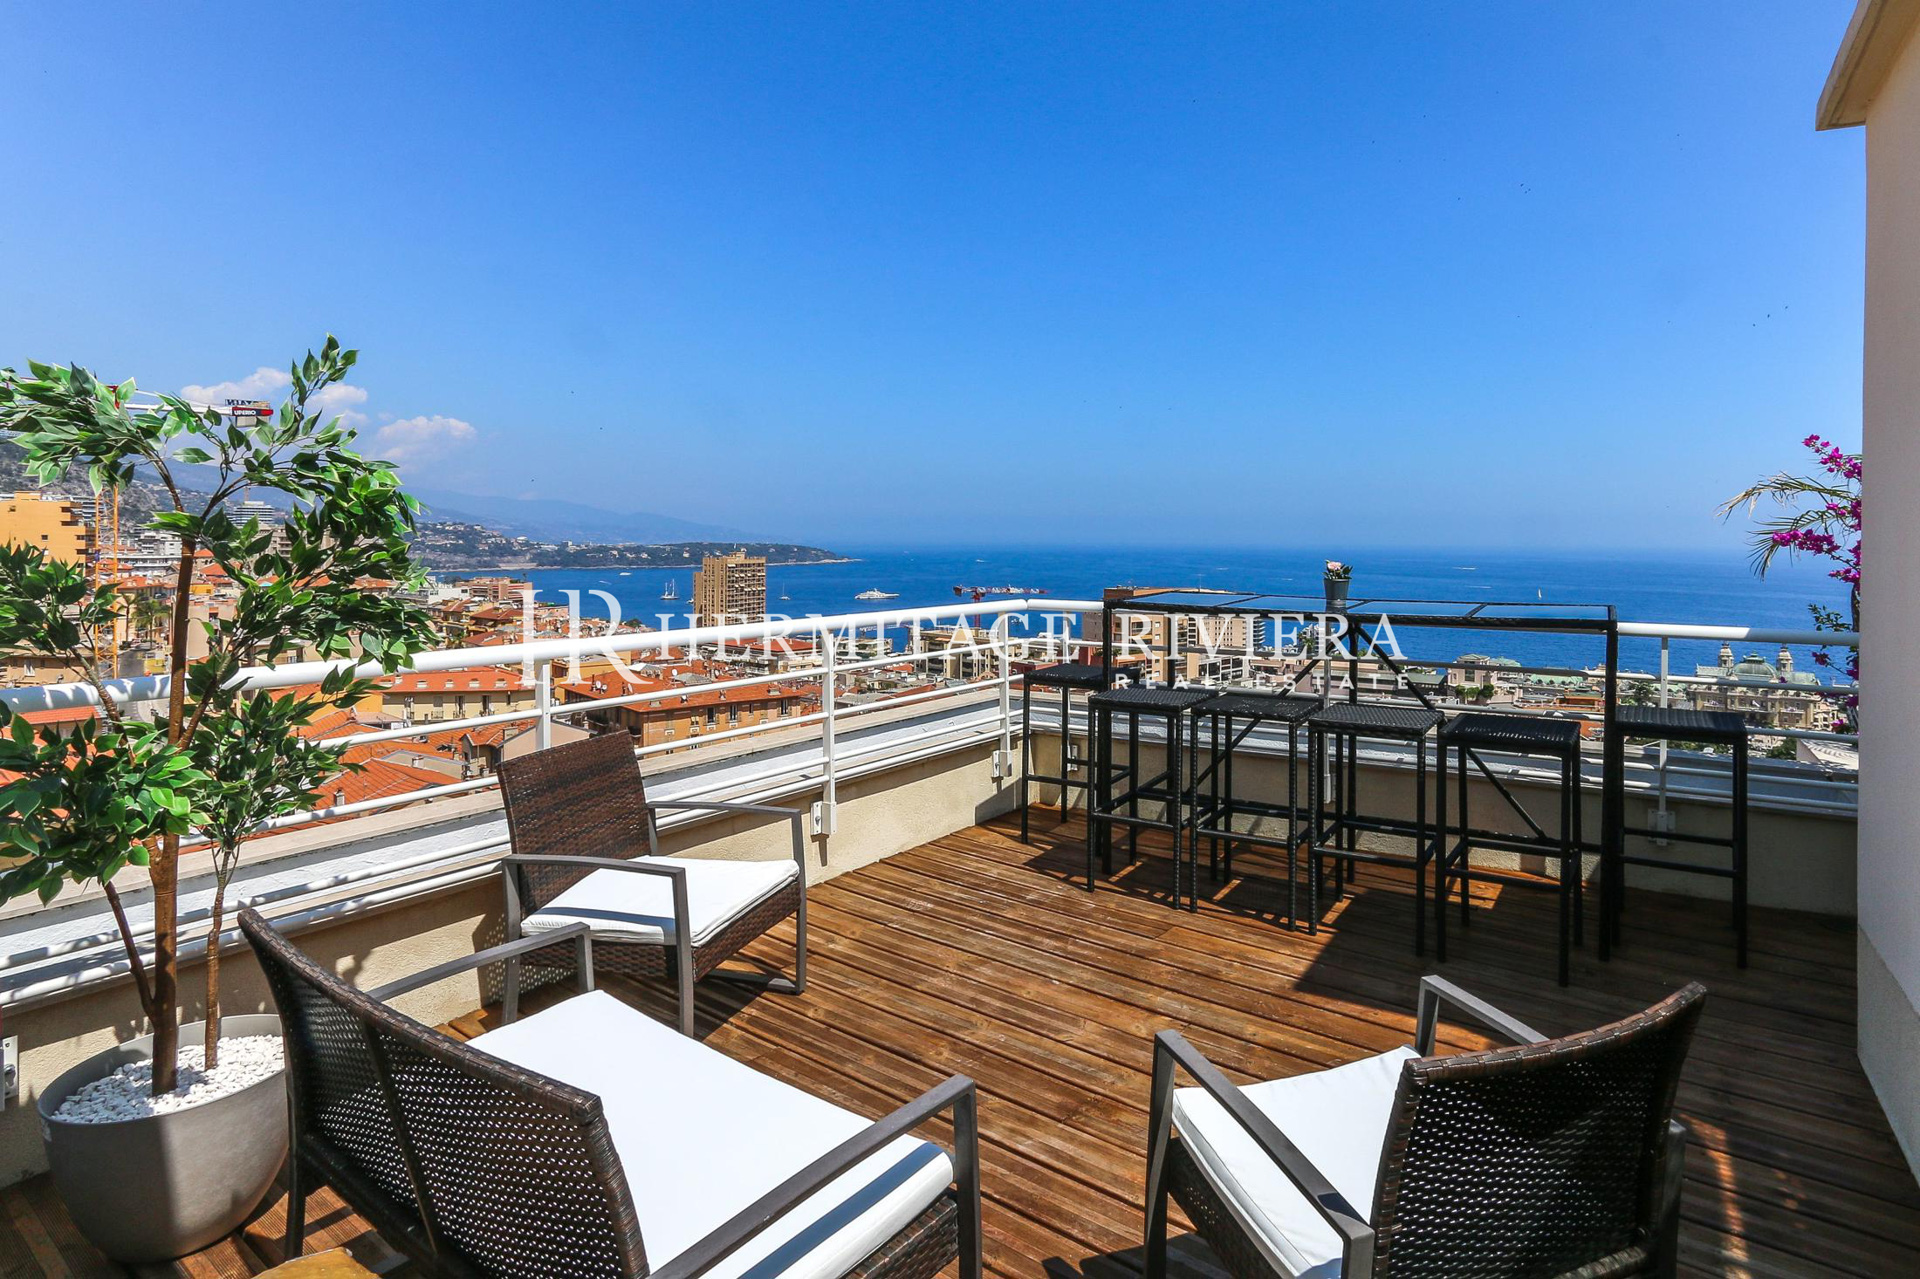 Penthouse-duplex renovated overlooking Monaco (image 2)